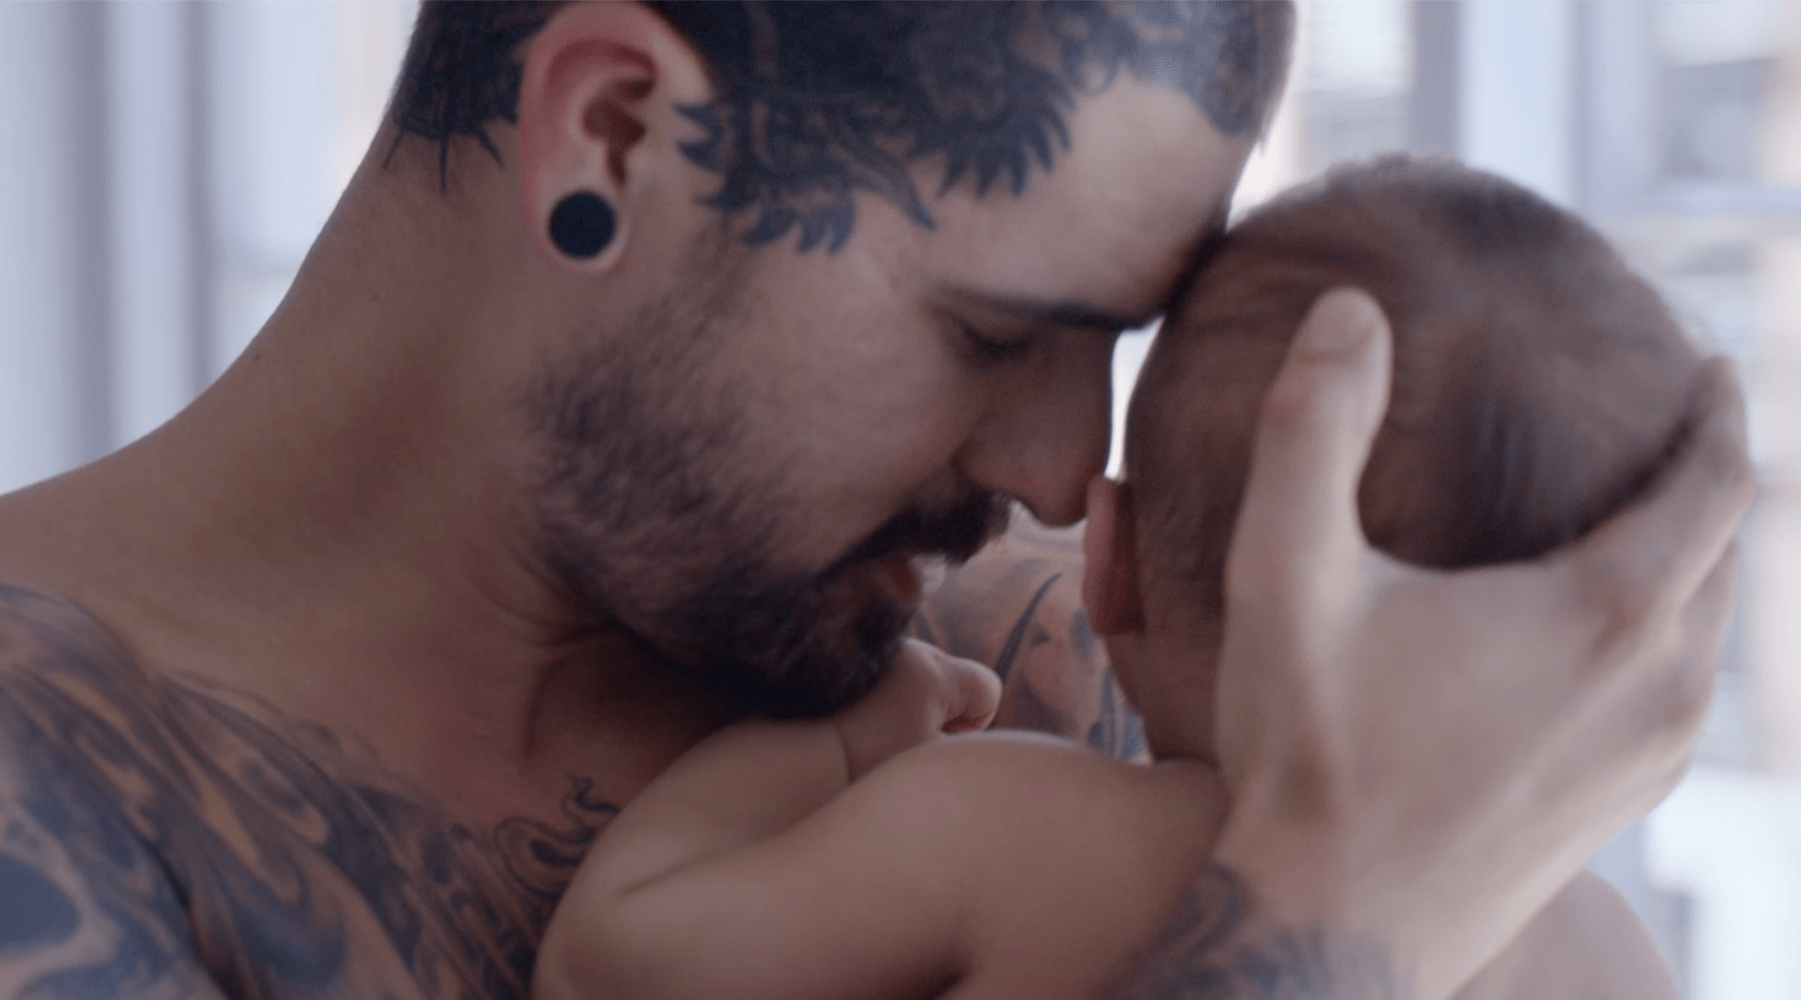 homem com tatuagens com bebé ao colo